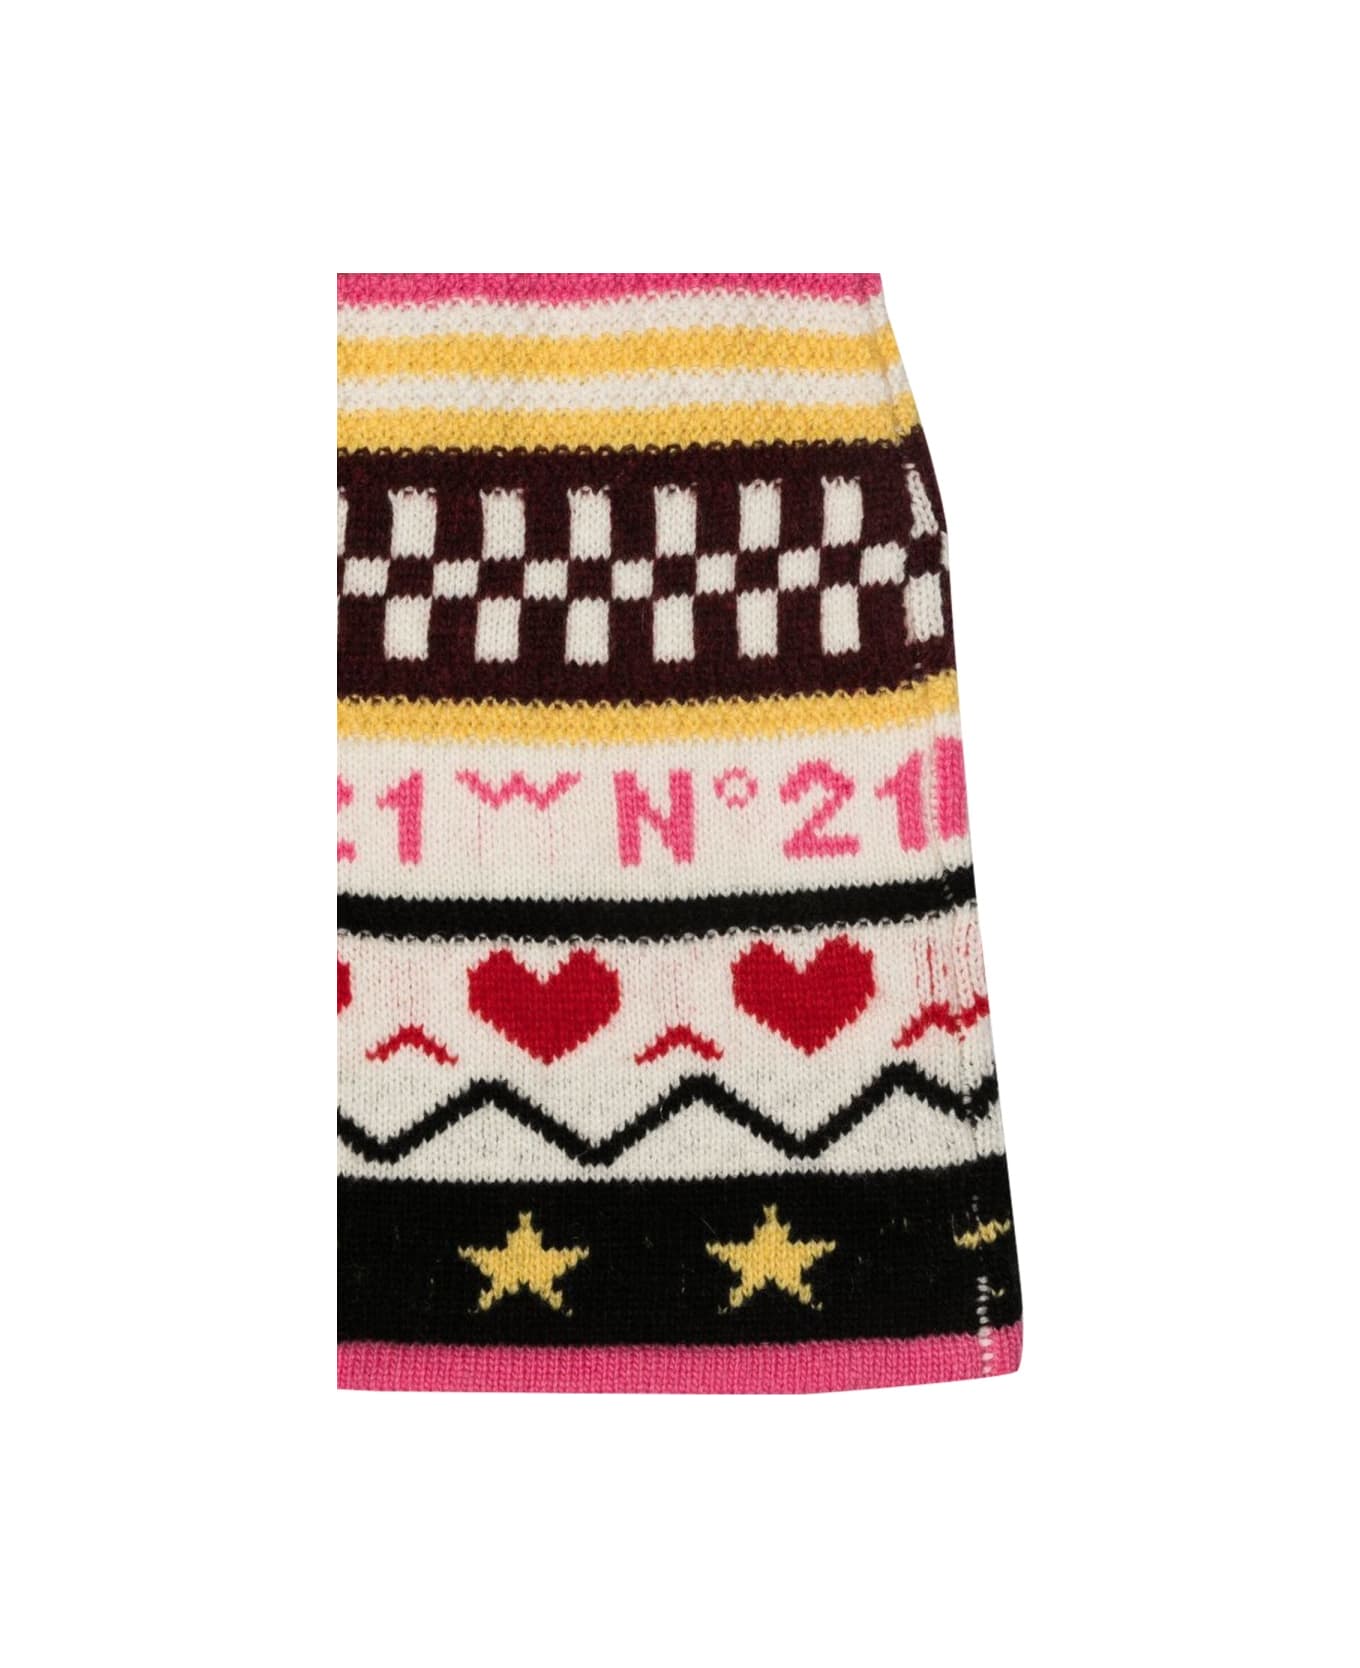 N.21 Allover Jacquard Knit Skirt - MULTICOLOUR